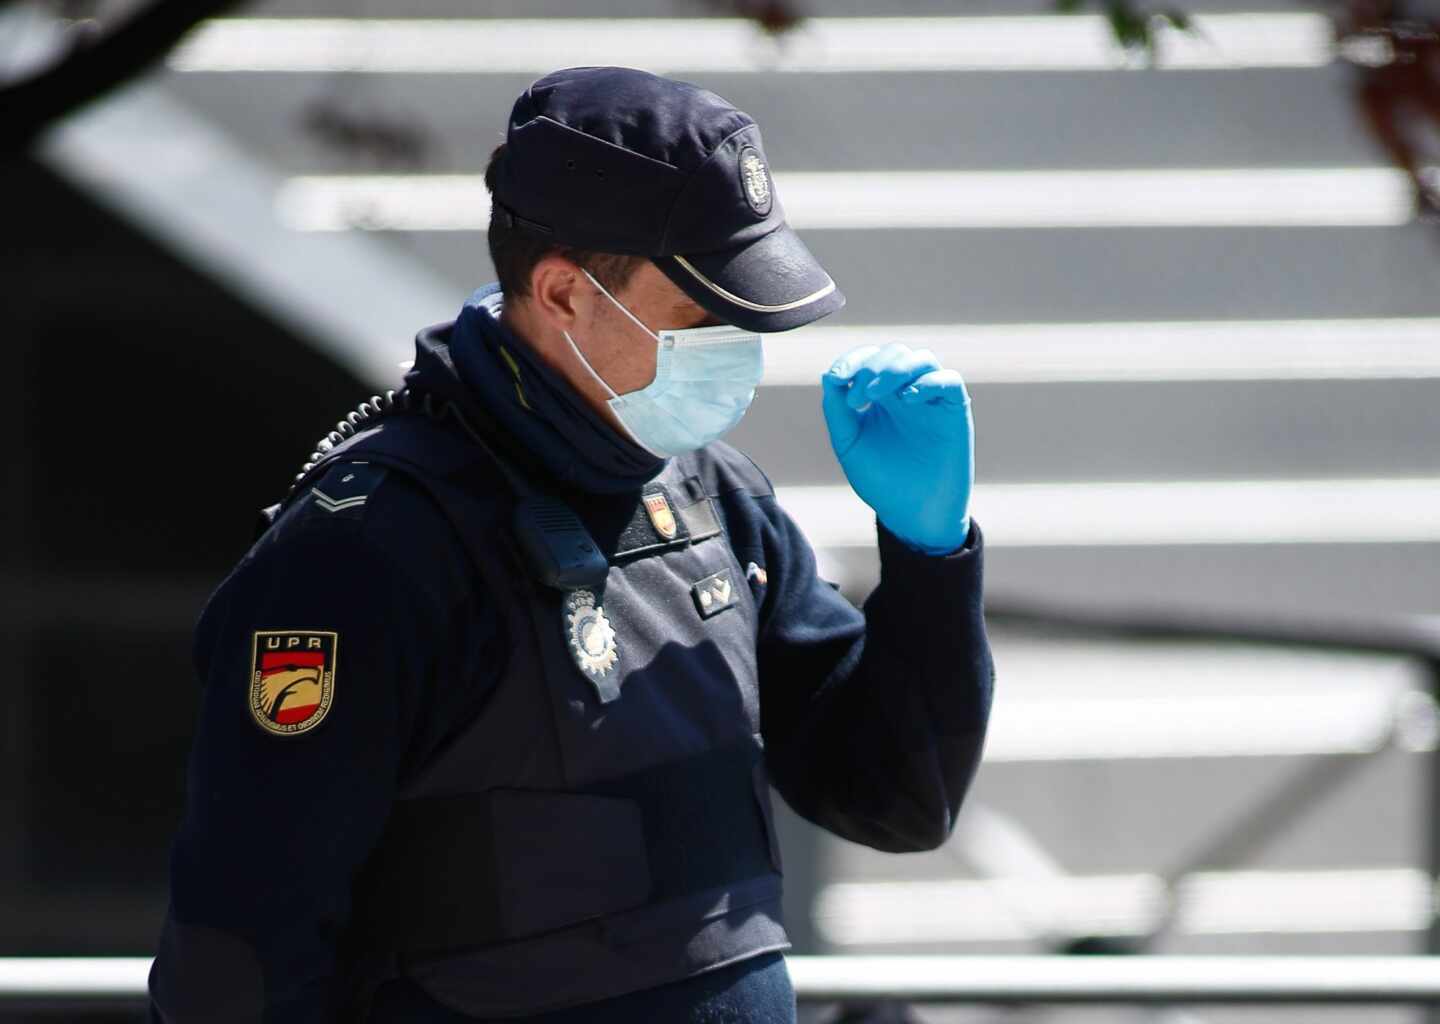 Un policía nacional de la Unidad de Prevención y Reacción (UPR), protegido con mascarillas y guantes durante un servicio.